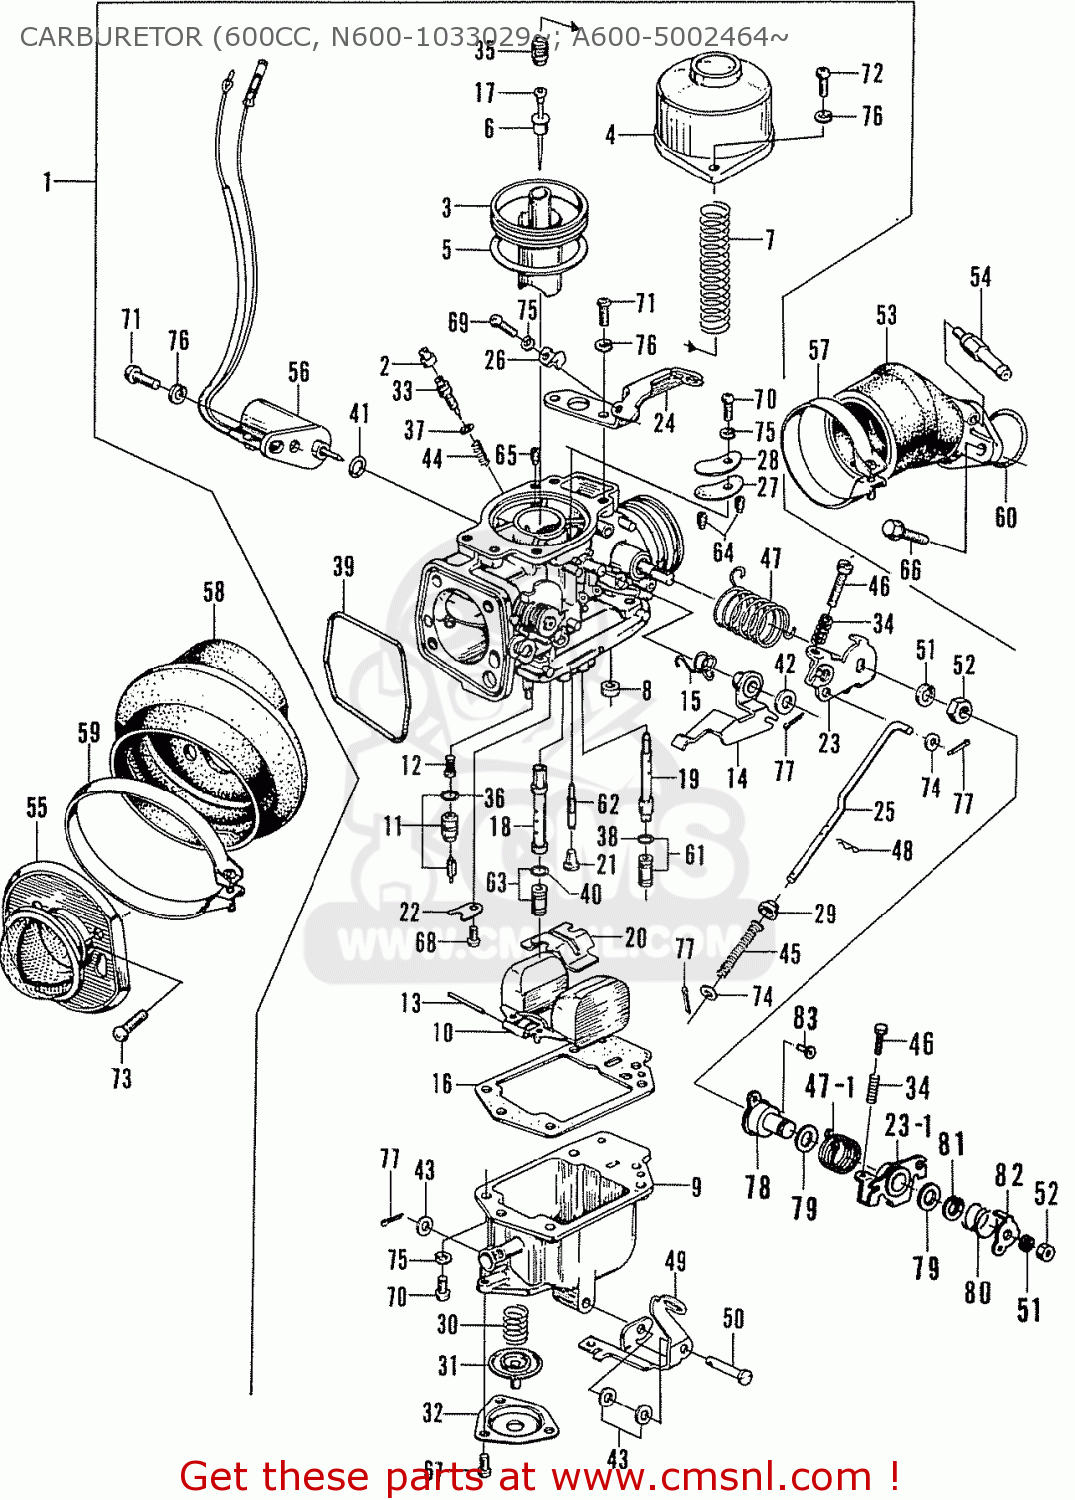 Wiring Diagram Info: 24 Kf Carburetor Diagram